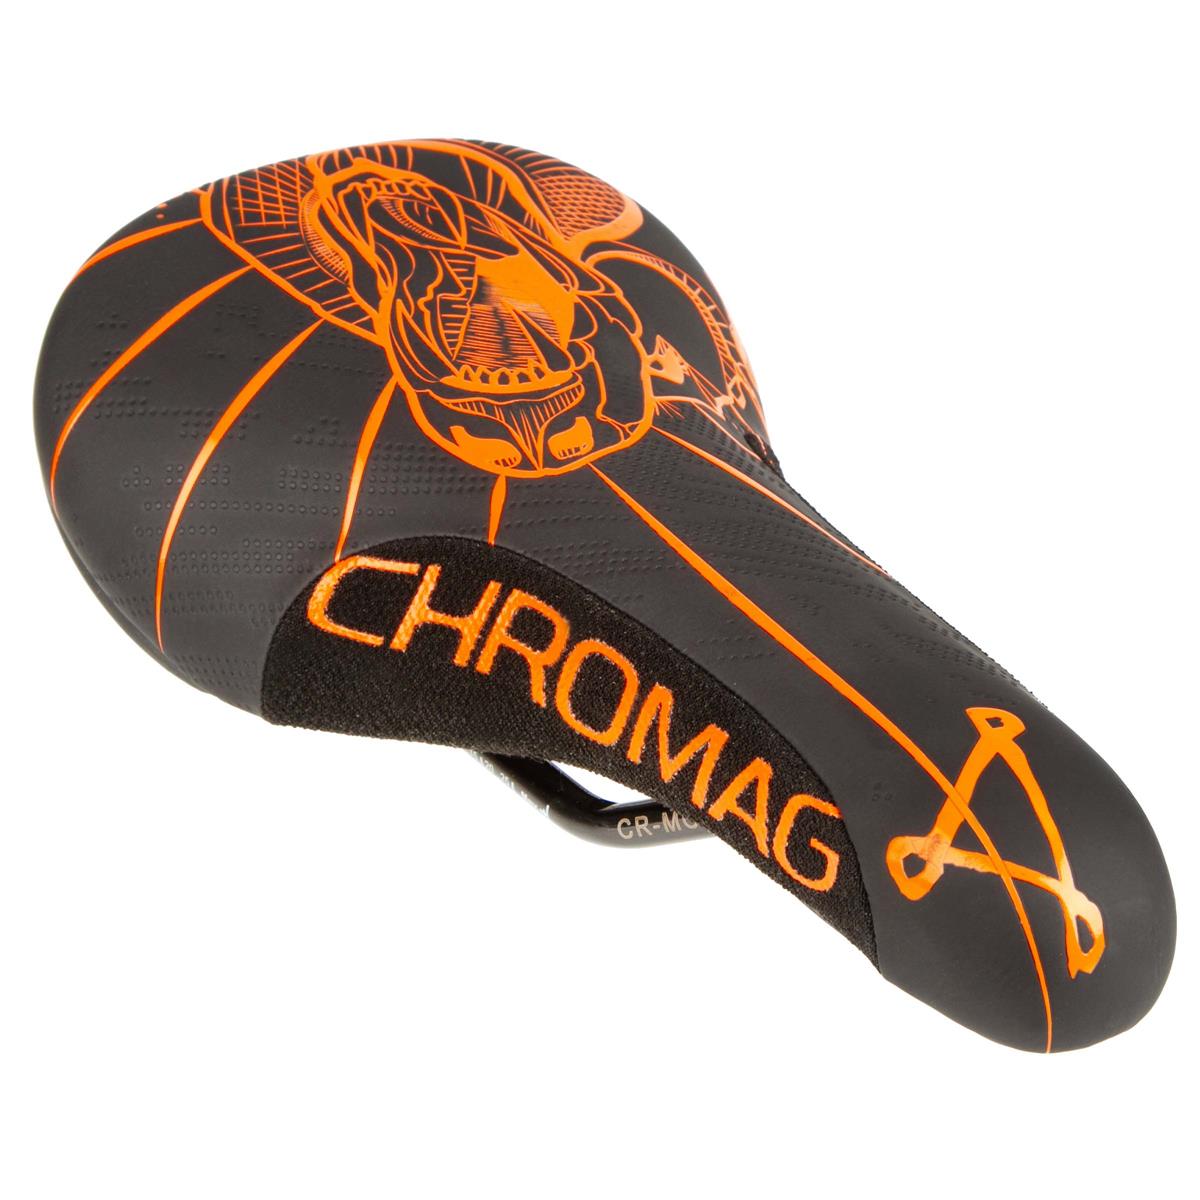 Chromag Selle Overture 2019 243 x 136 mm, Noir/Orange